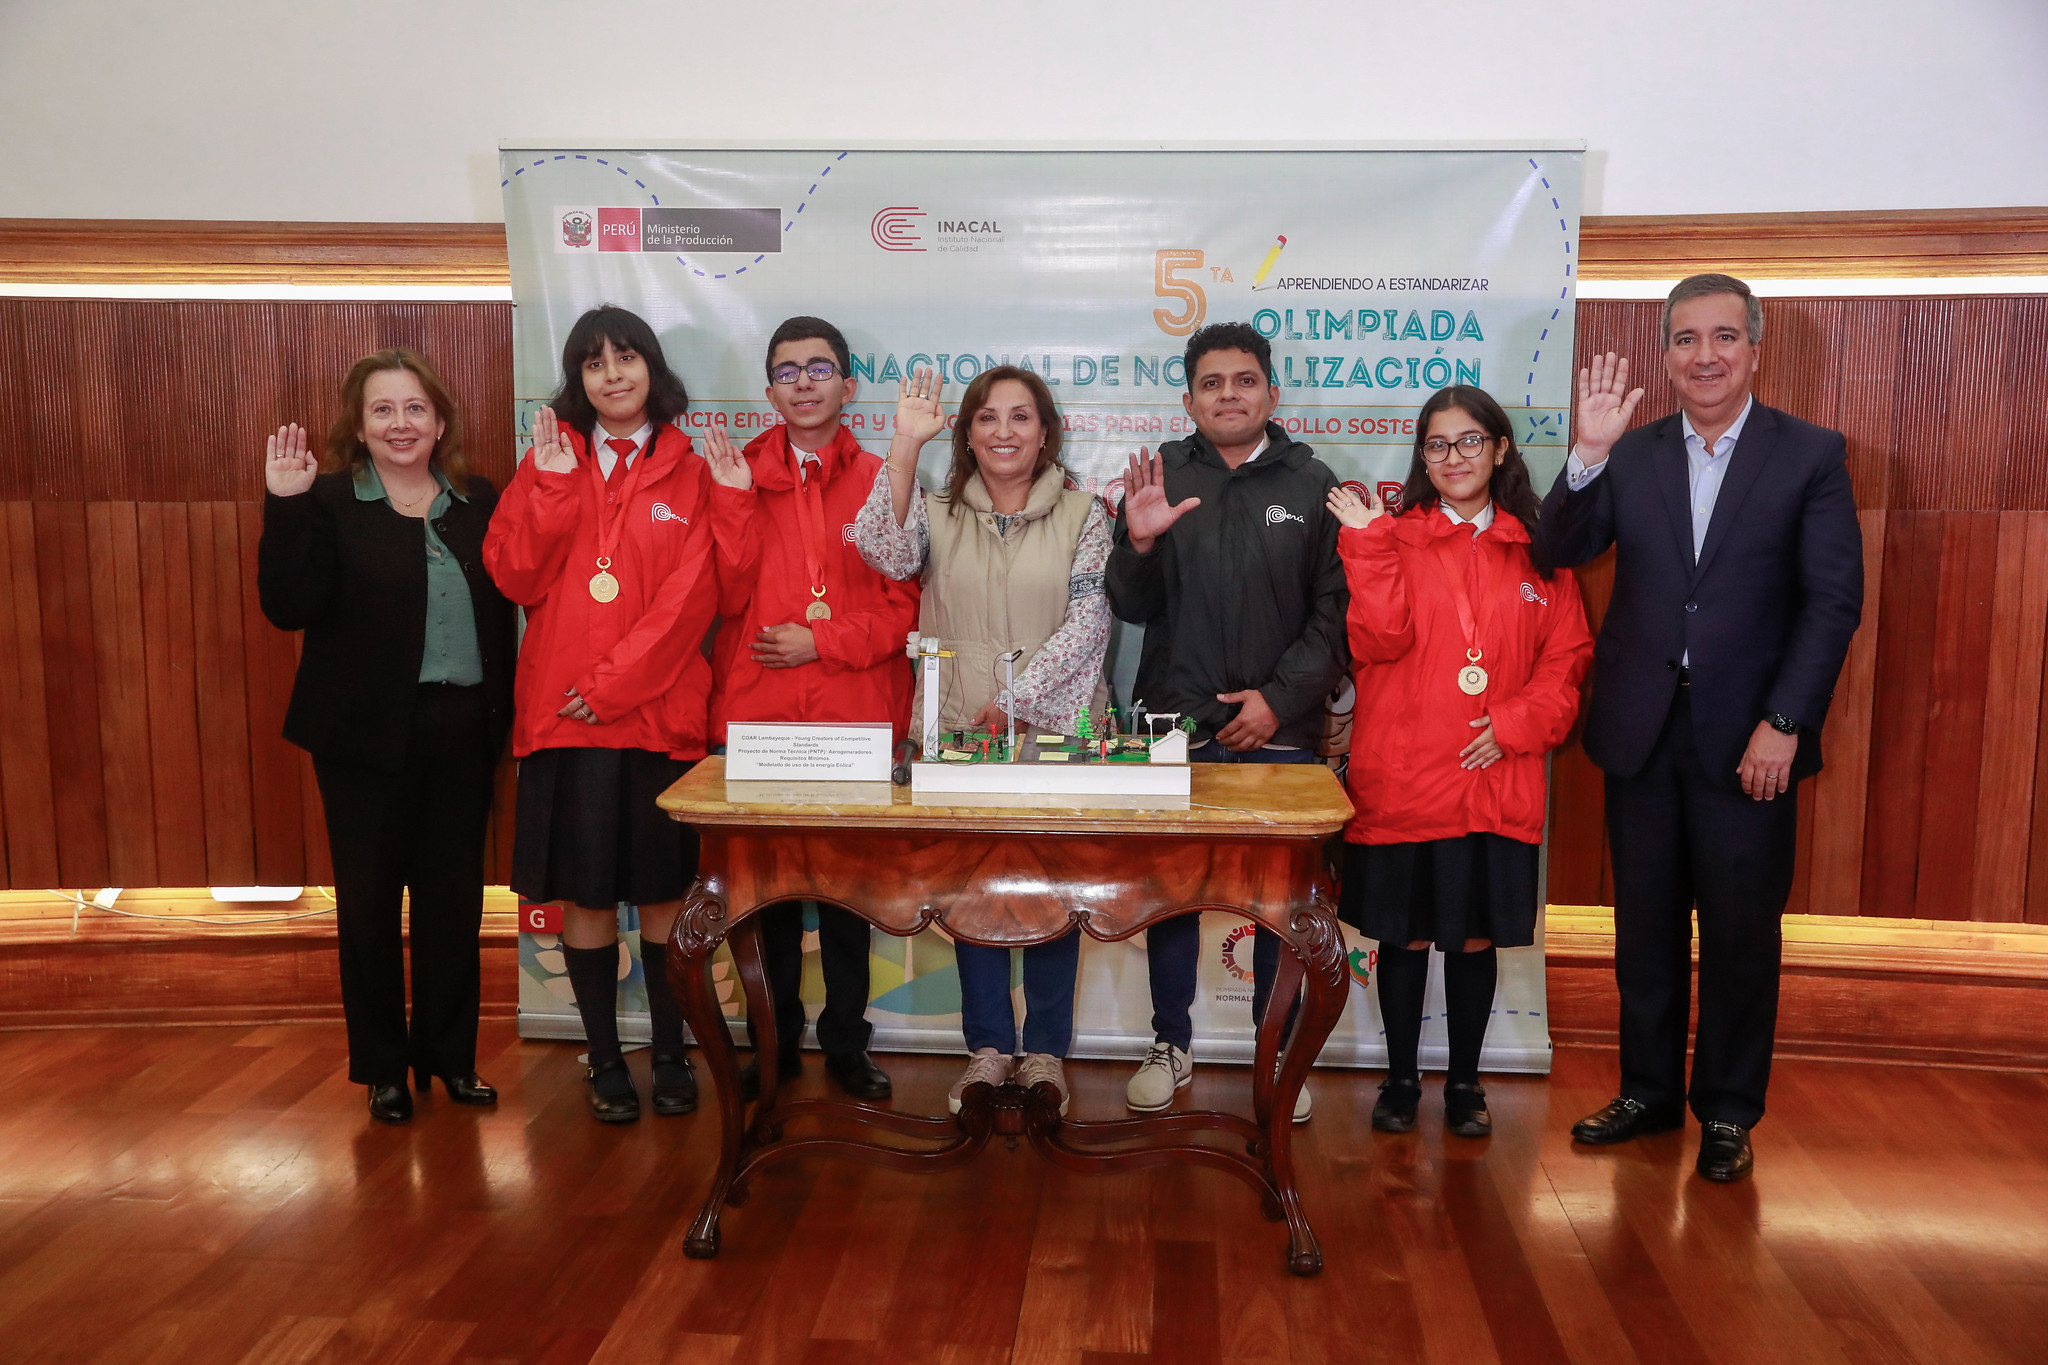 Presidenta Boluarte recibe a alumnos ganadores de olimpiada que promueve creatividad científica y cultura de la calidad